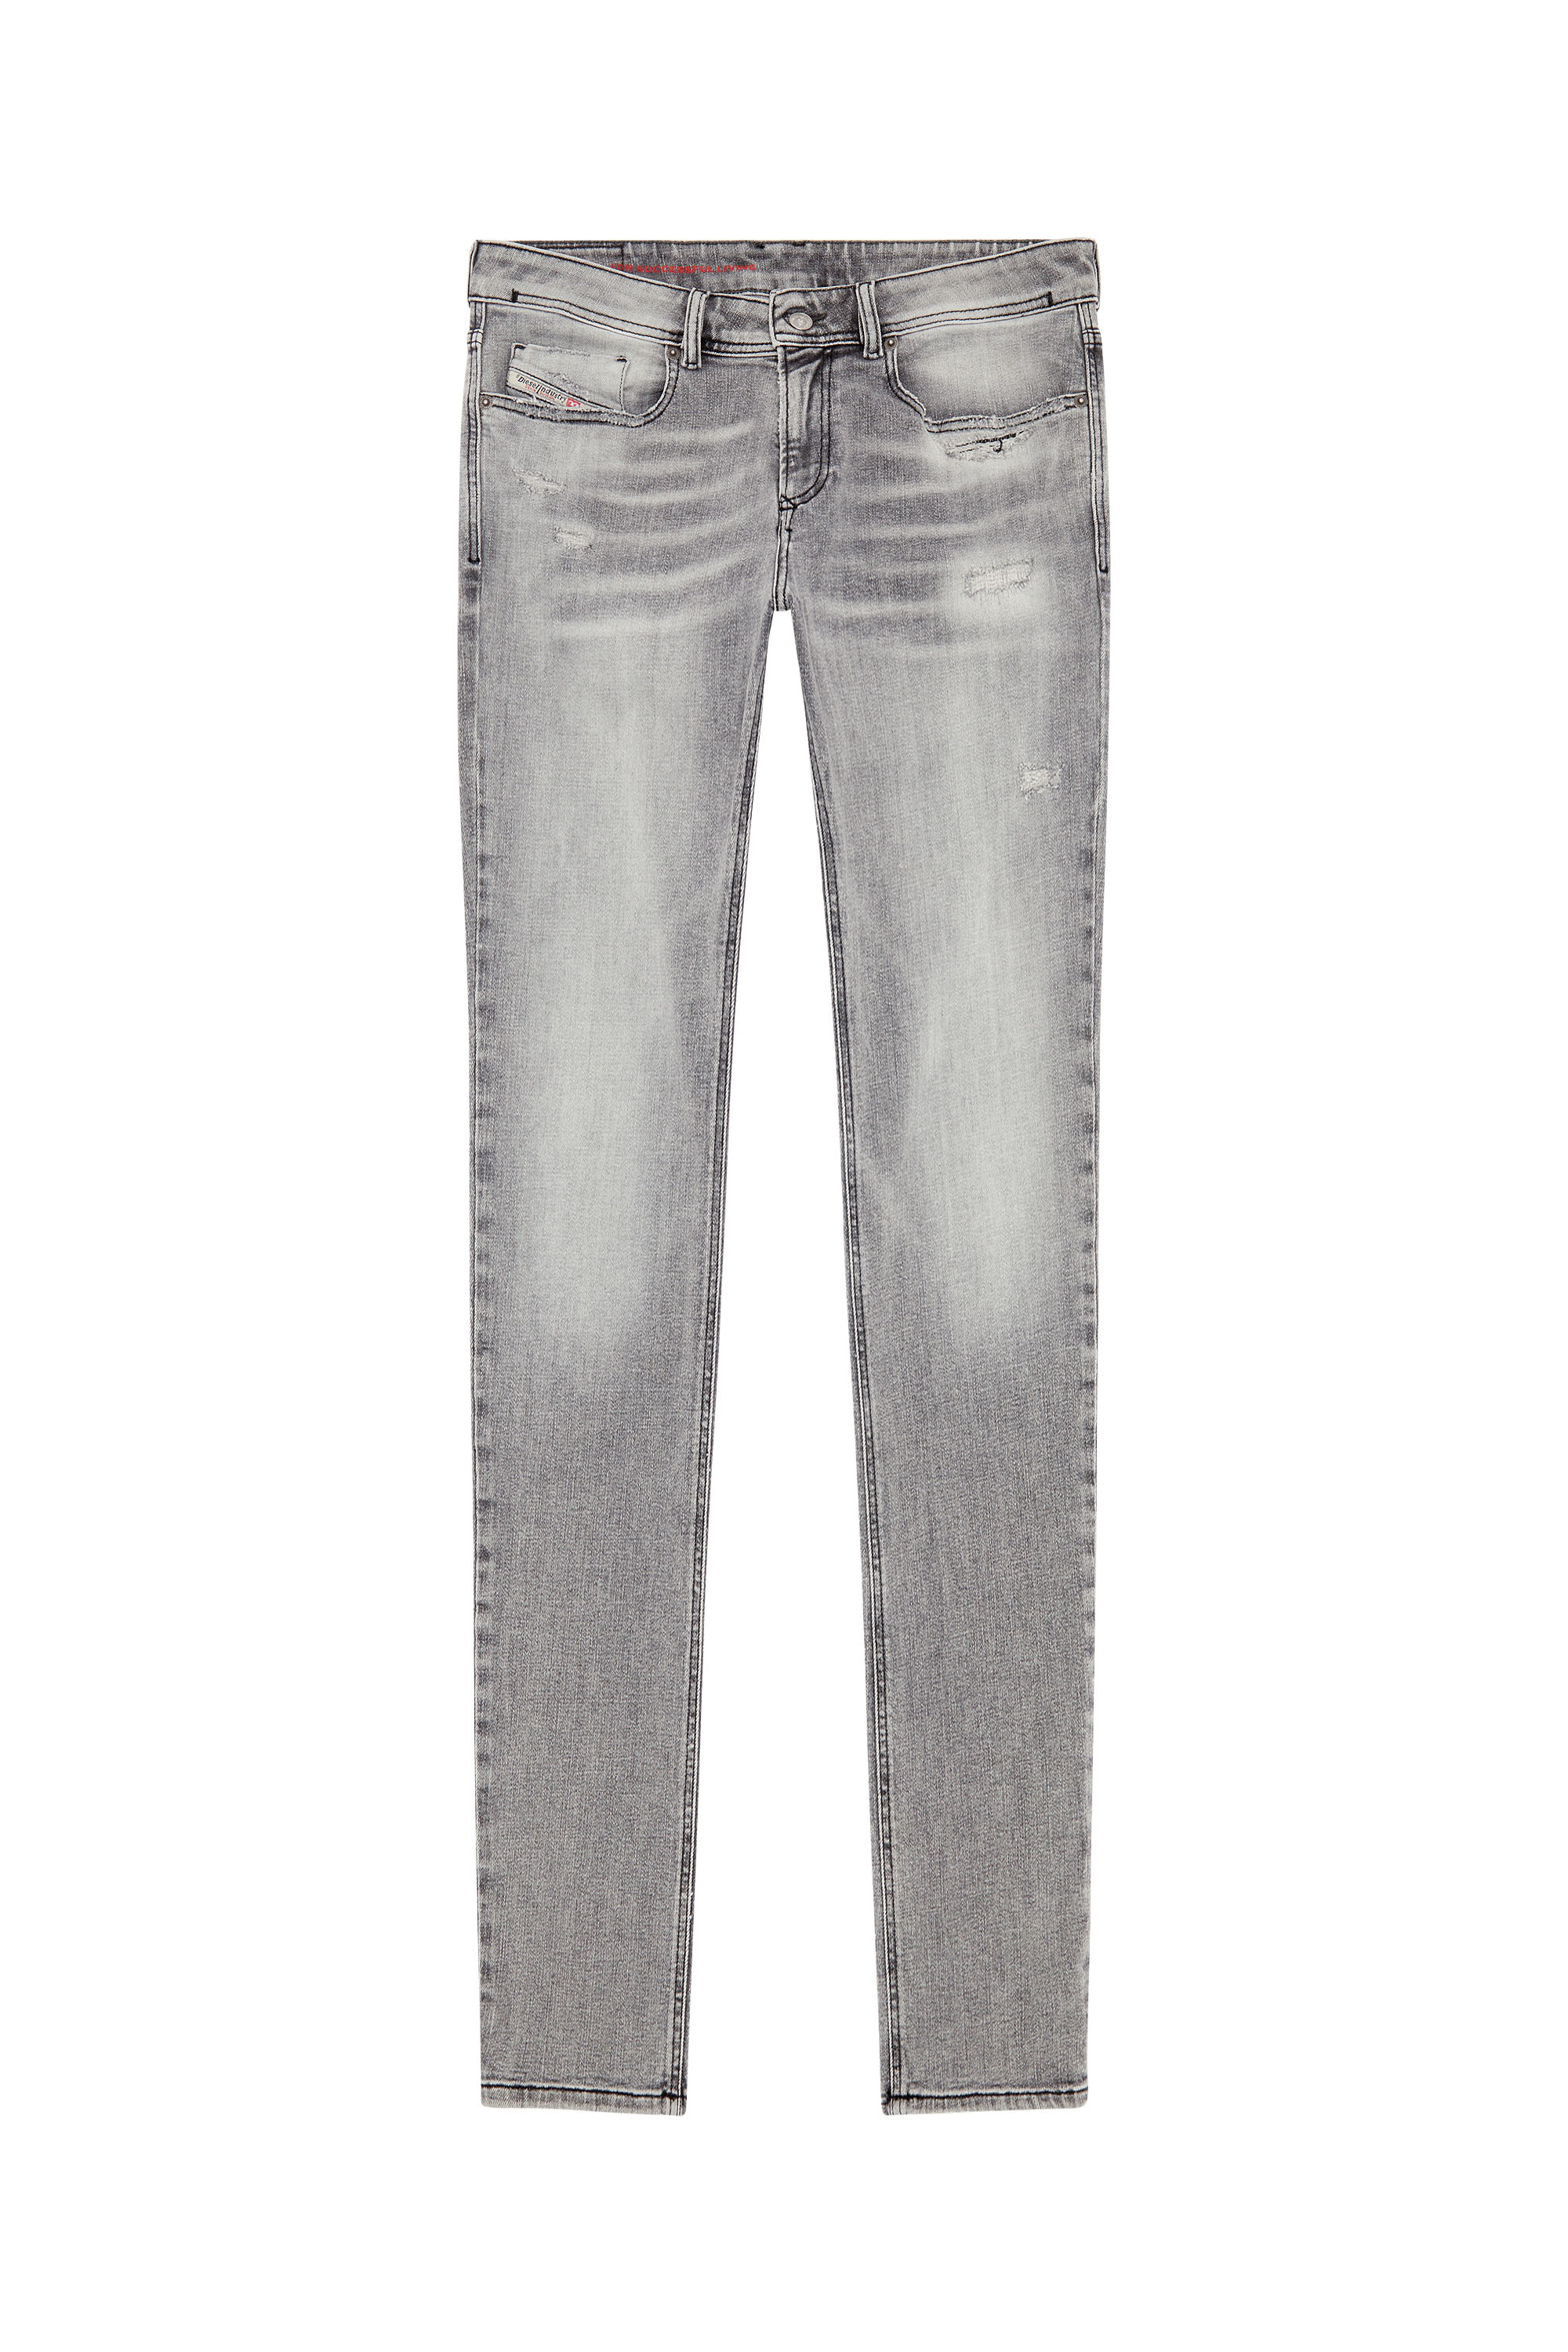 Diesel - Skinny Jeans 1979 Sleenker E9B97, Black/Dark grey - Image 5